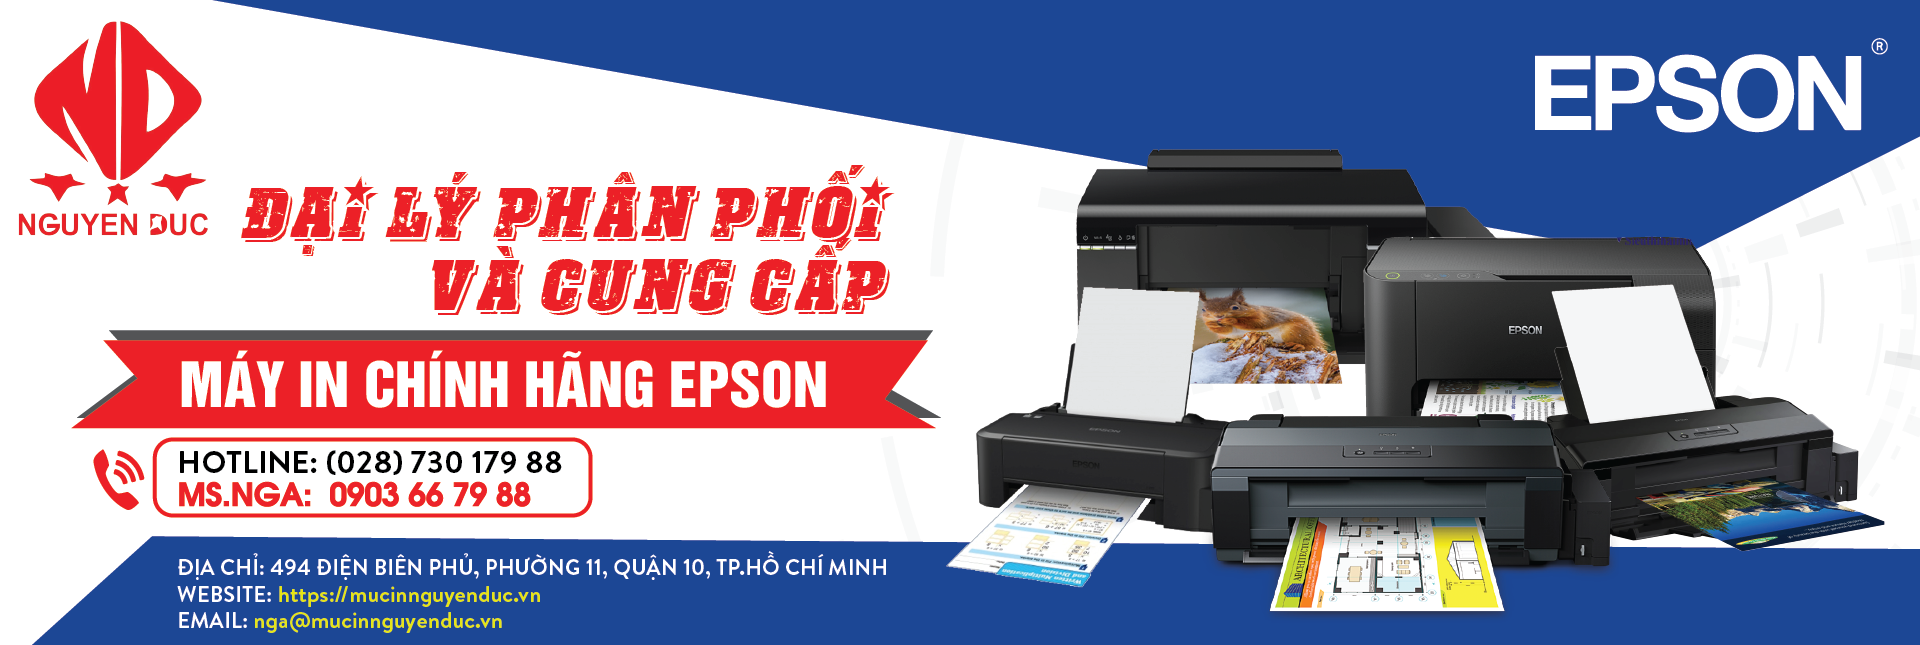 Đại lý phân phối chính hãng máy Scan Epson DS 530, Giao hàng và lắp đặt tại khu vực Quận 1, Thành phố Hồ Chí Minh